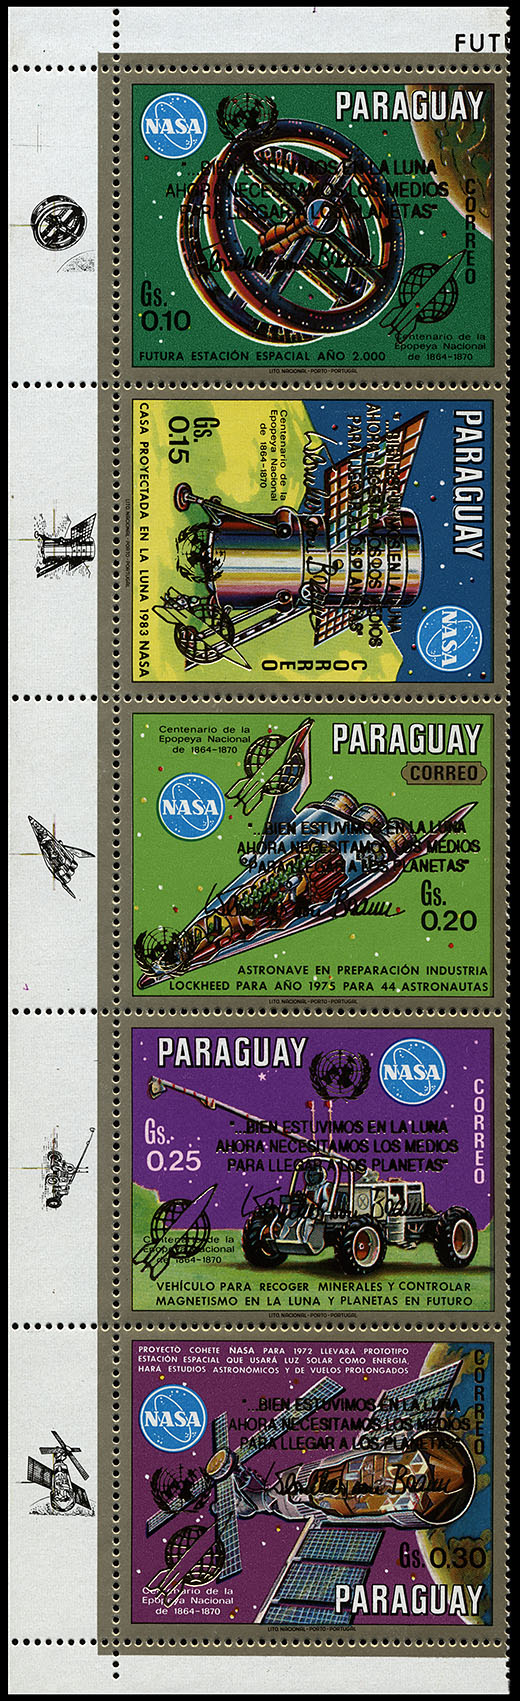 http://www.fandom.ru/about_fan/stamps/paraguay_1989_future_space_von_braun_mi_4388_label_4392_label.jpg